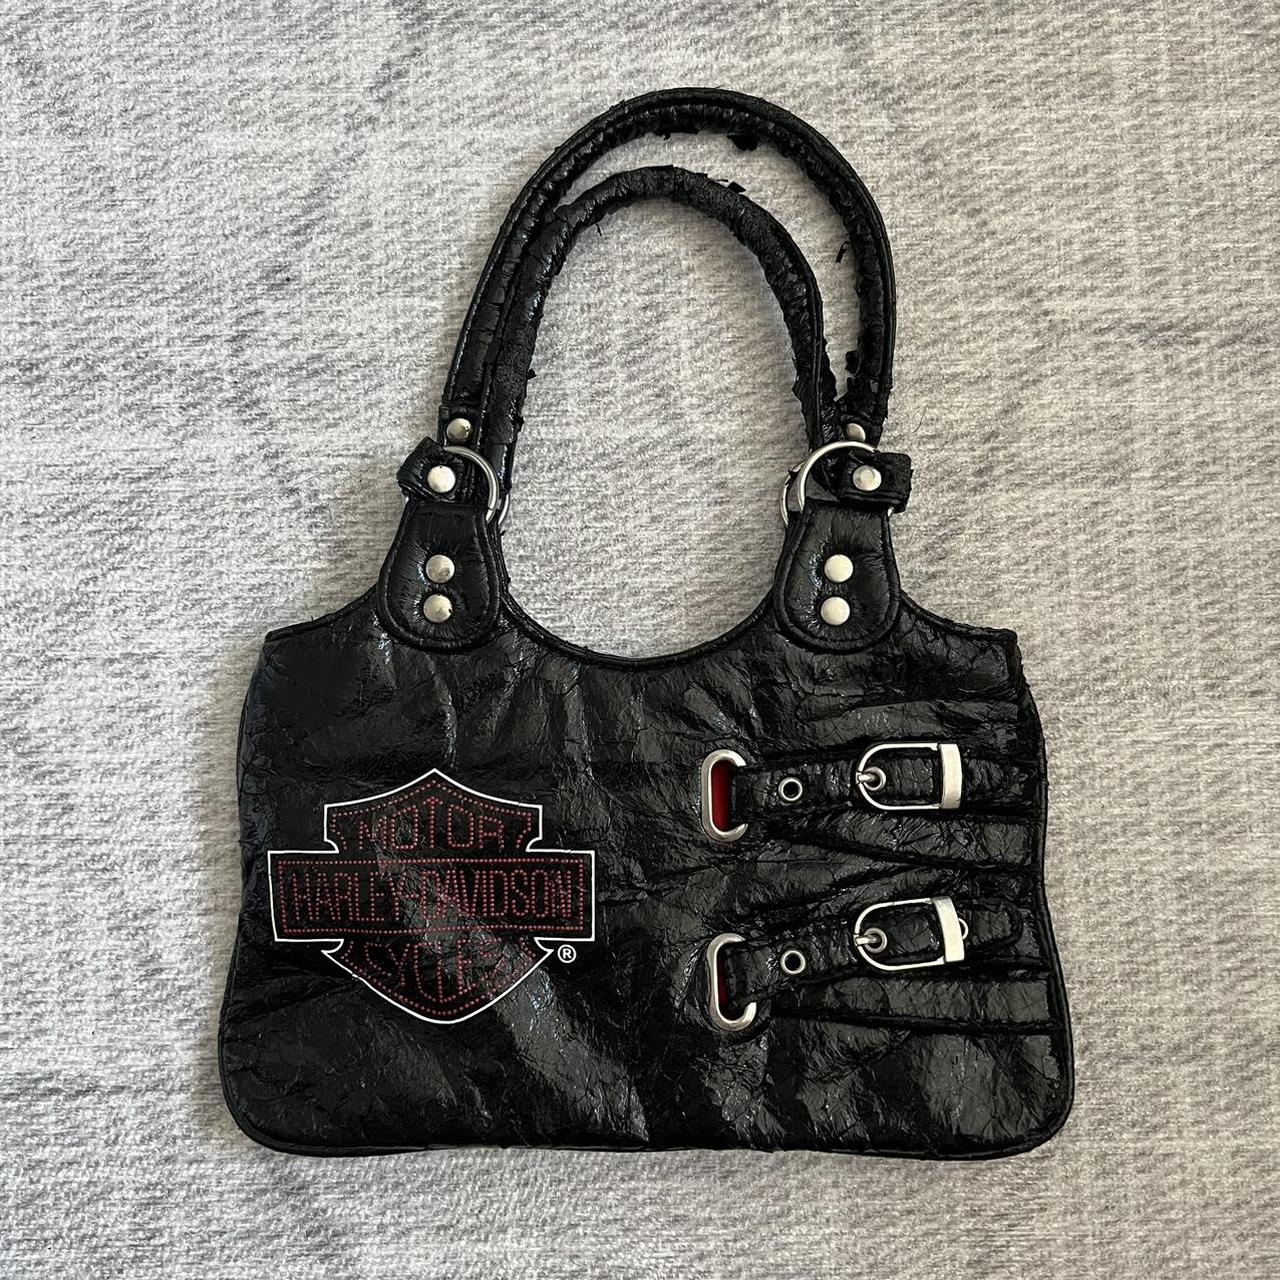 Harley Davidson Hand Bag - Vintage Black Leather Bag - Woman's Black  Leather Purse